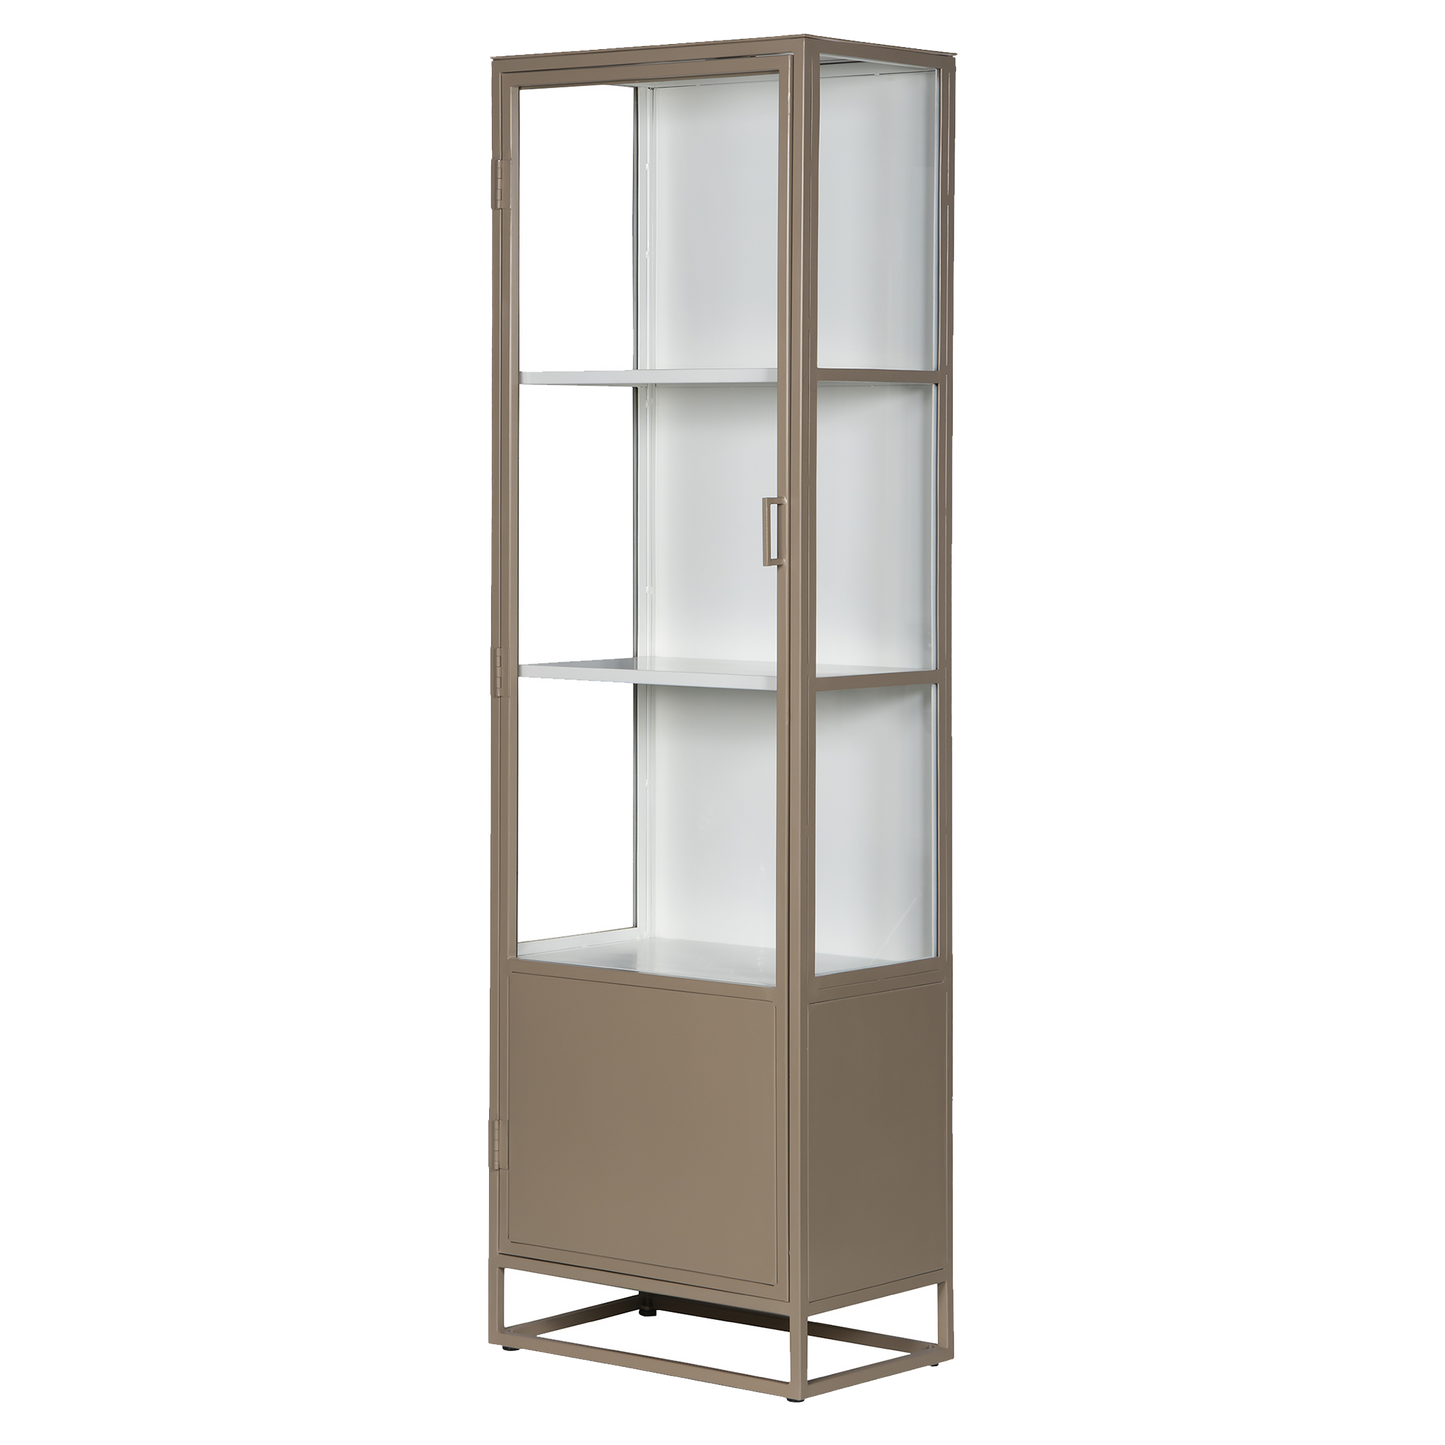 Metal single door glass cabinet 200cm biscuit